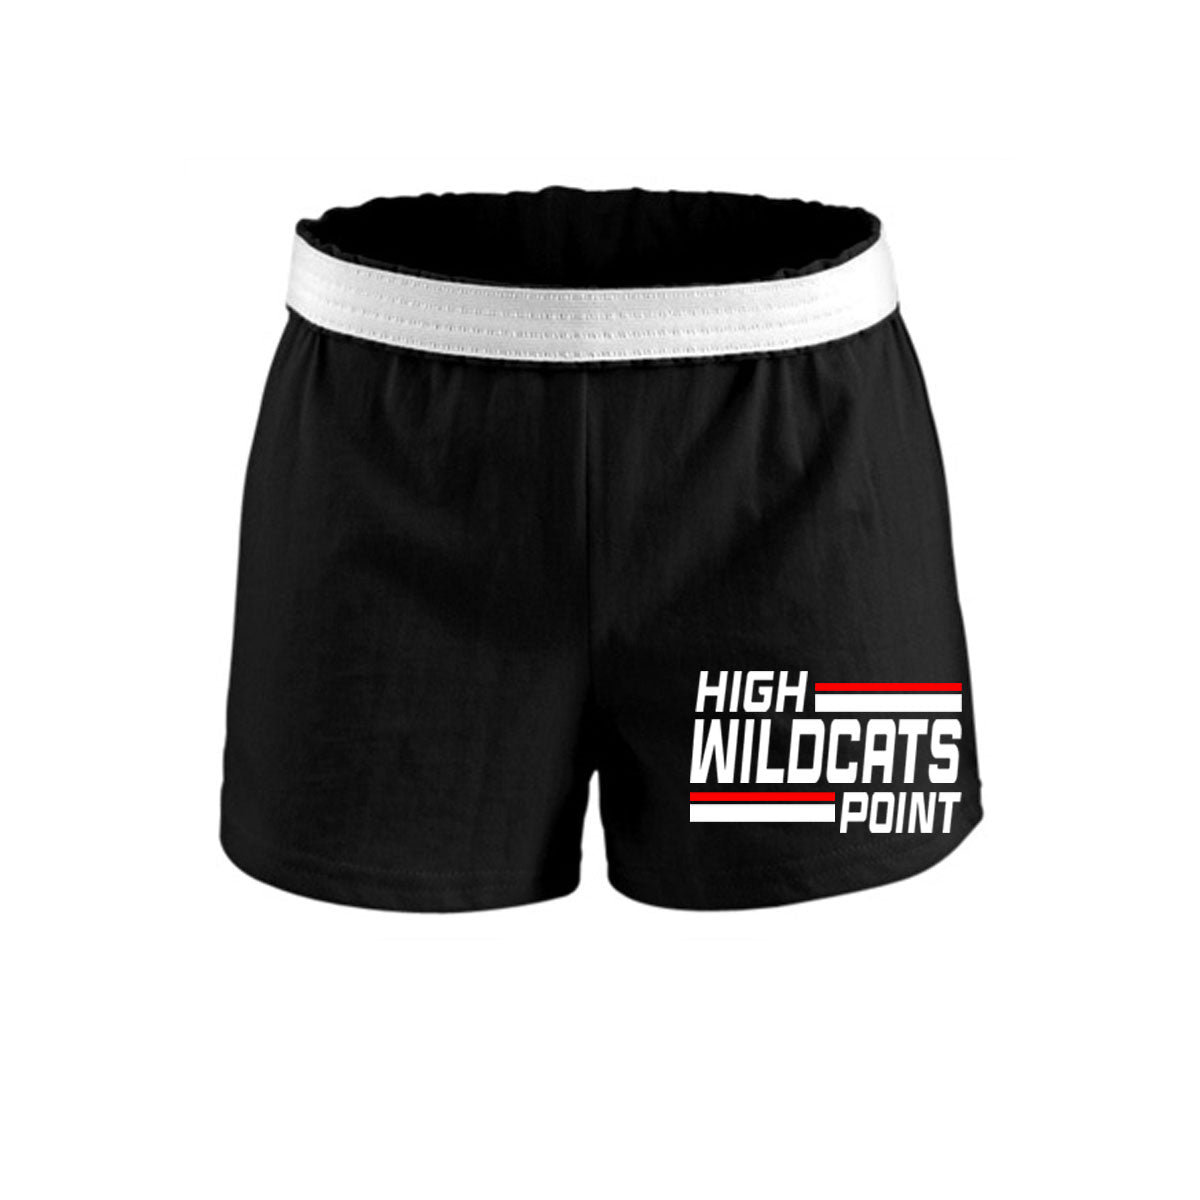 Wildcats Cheer Design 4 Shorts